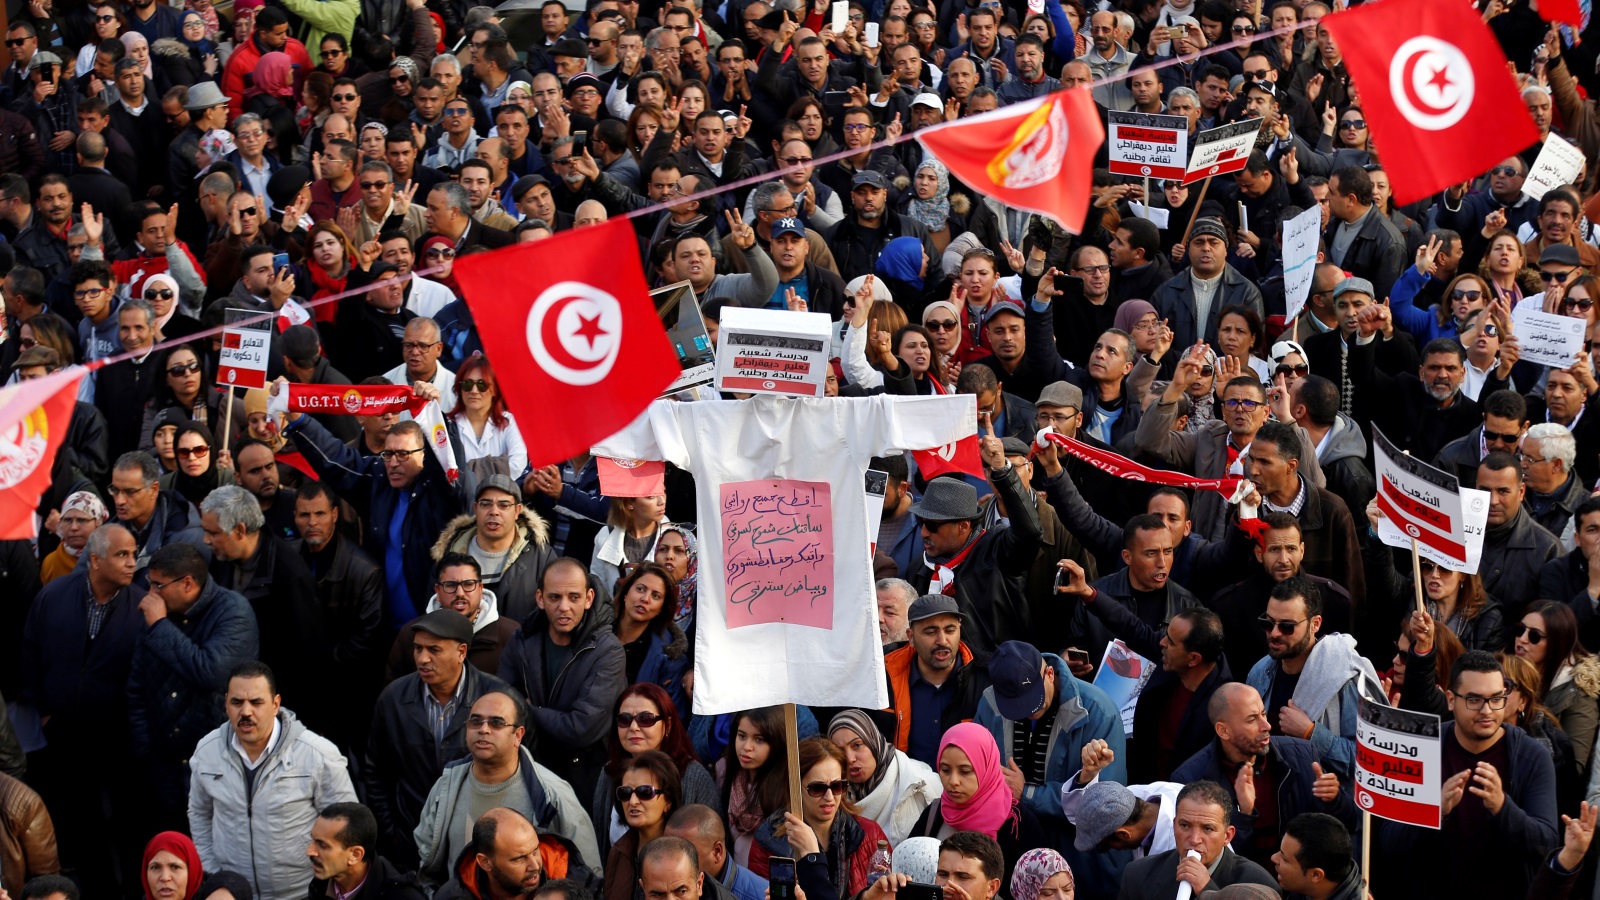 الاحتجاجات المطلبية والإضراب عن العمل بات واحدا من سمات المشهد اليومي في تونس بعد الثورة (رويترز)